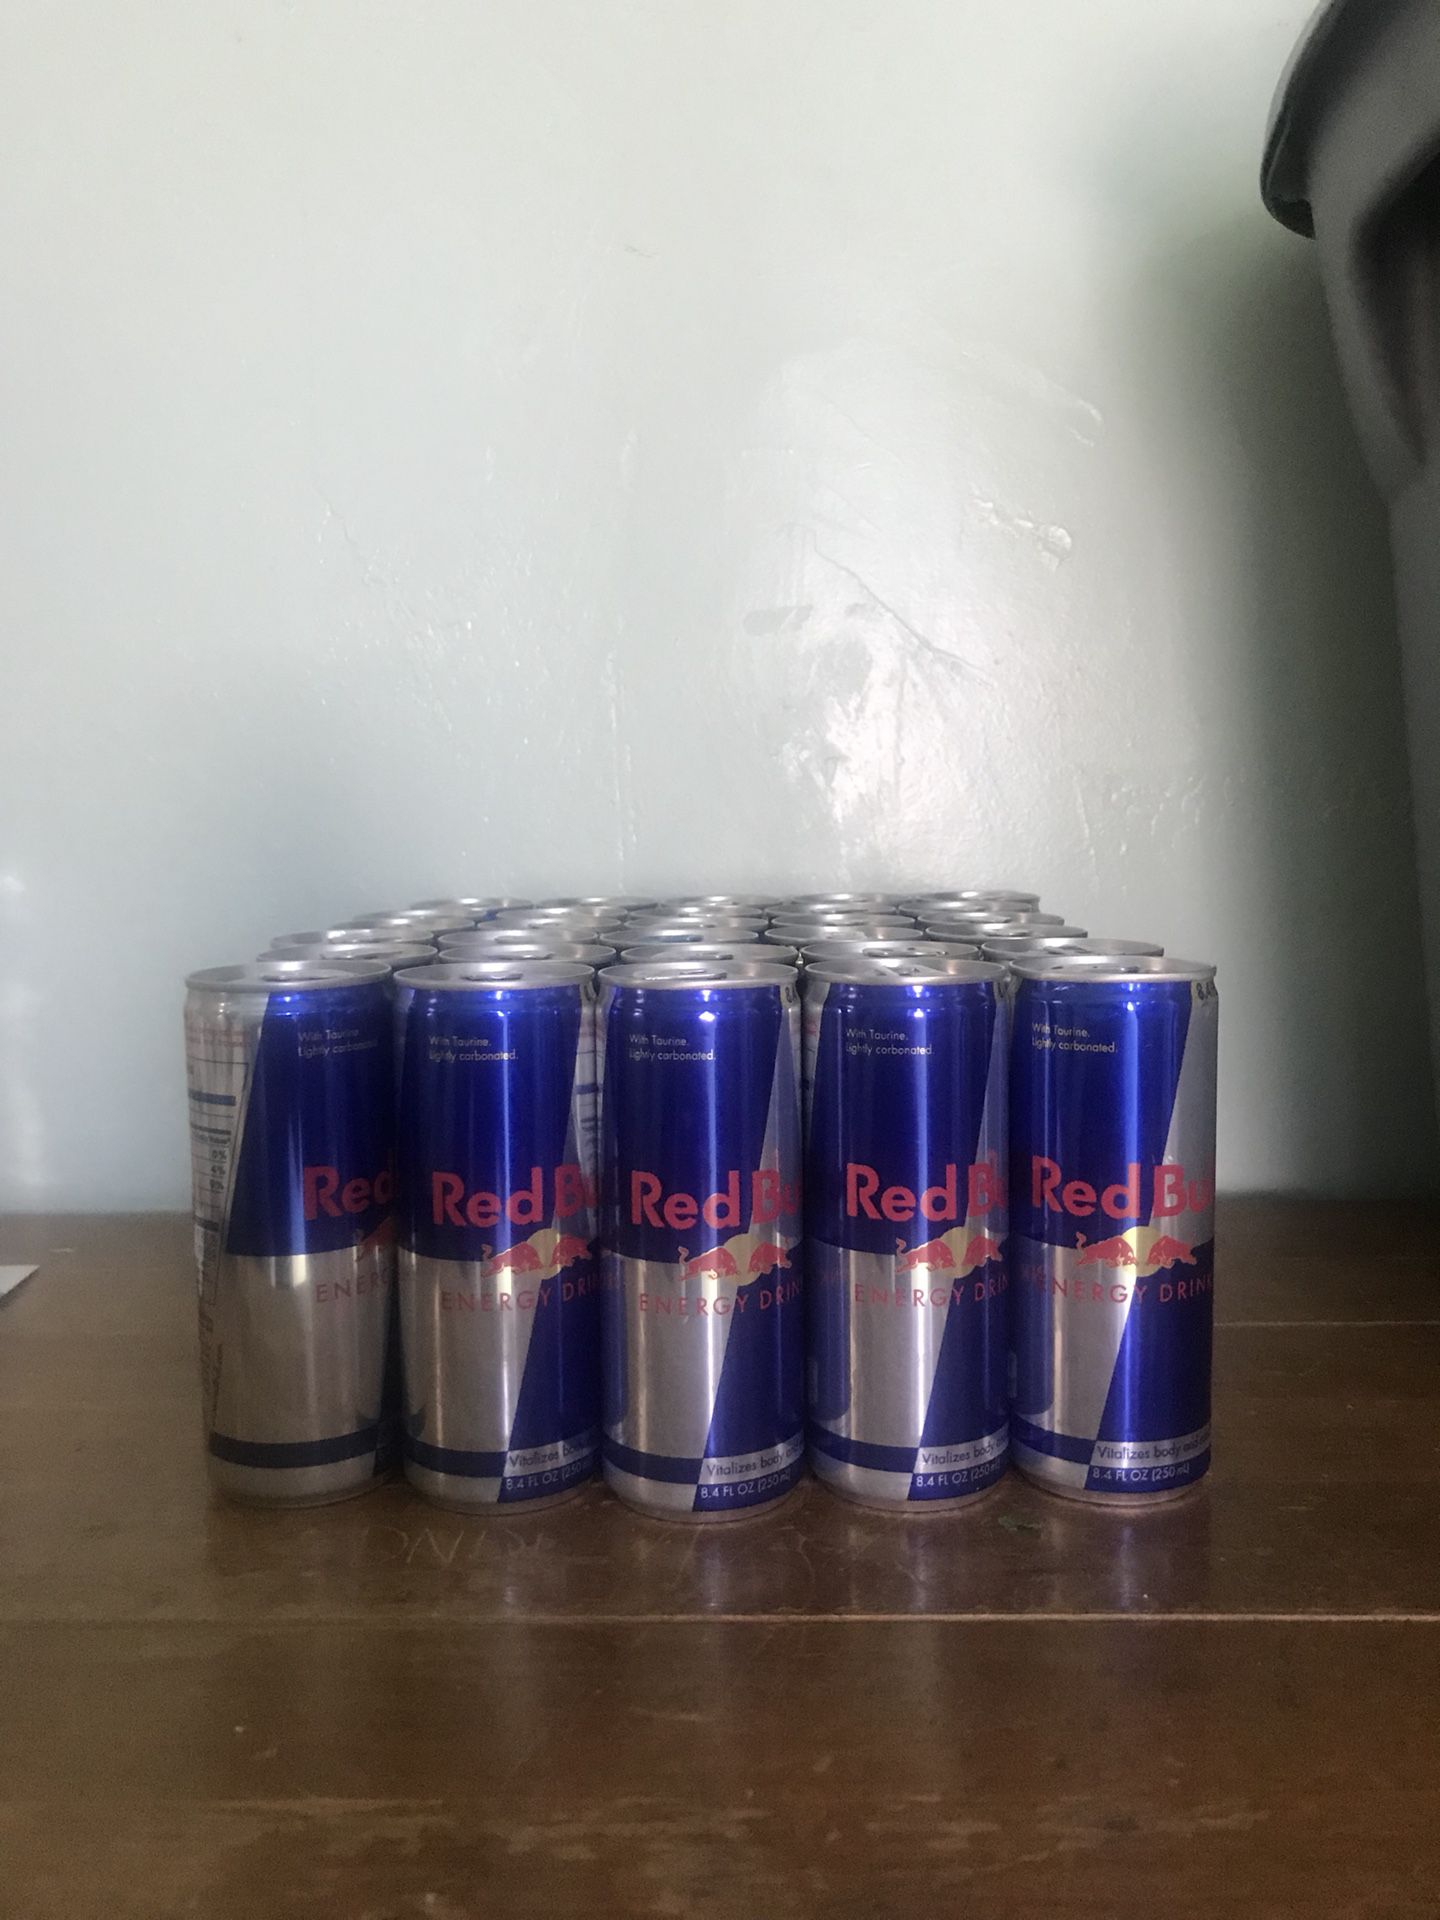 30 Red Bull’s new